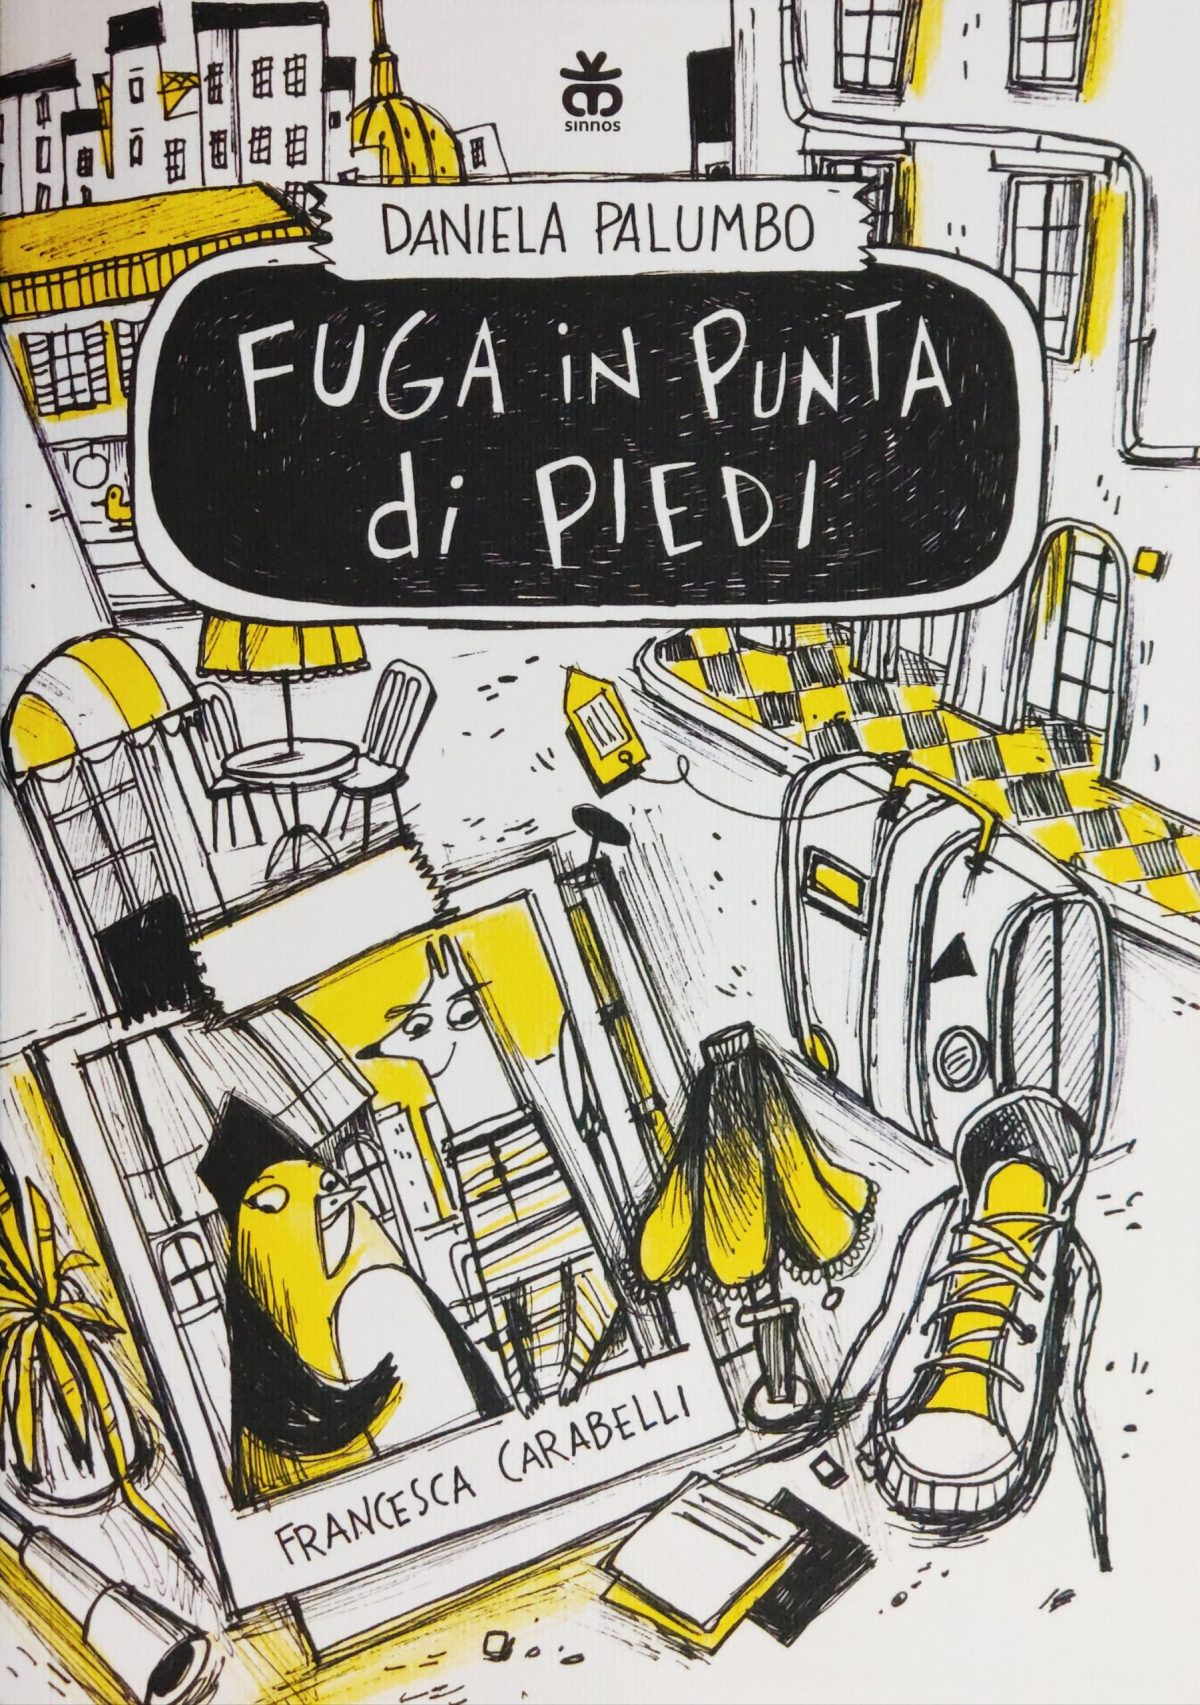 Mio caro fumetto... - Copertina di Fuga in punta di piedi di Daniela Palumbo e Francesca Carabelli (Sinnos Editrice)